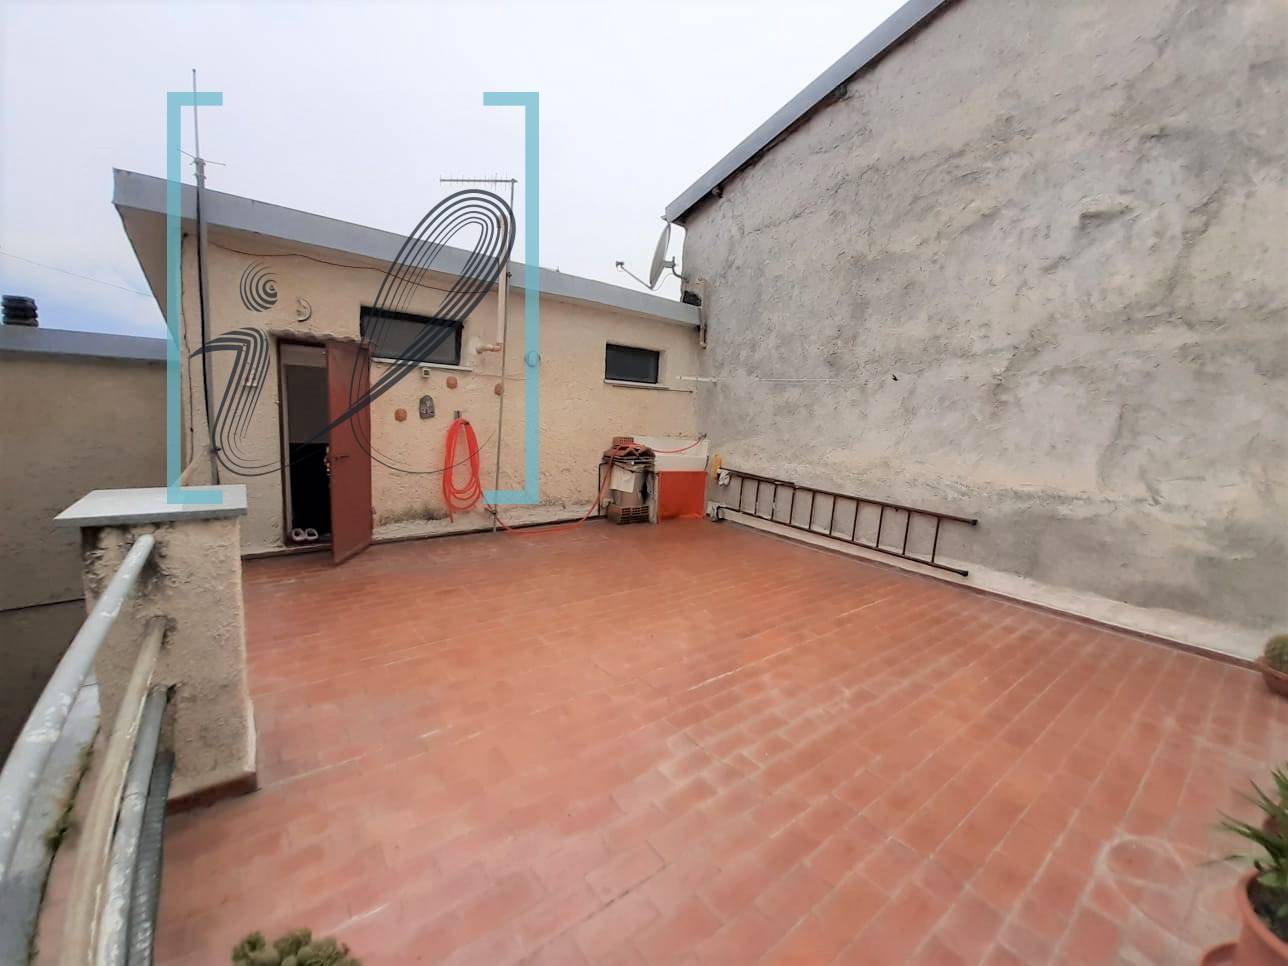 Rustico / Casale in vendita a Pornassio, 4 locali, zona Zona: Ottano, prezzo € 65.000 | CambioCasa.it